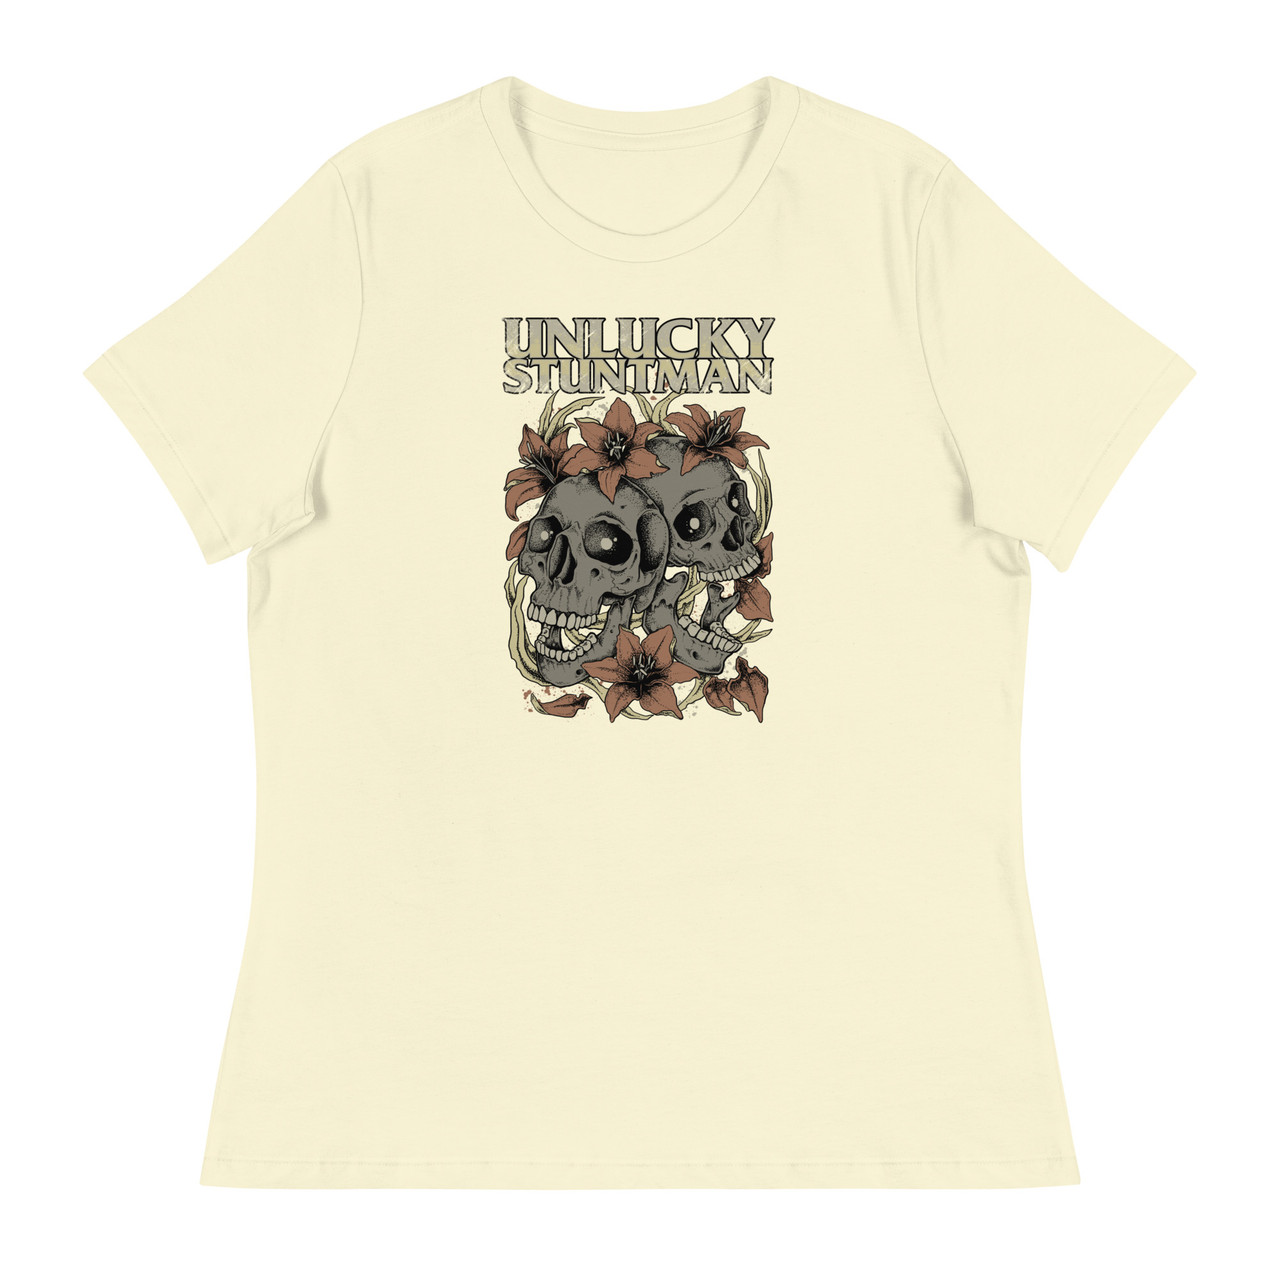 Unlucky Stuntman Women's Relaxed T-Shirt - Bella + Canvas 6400 